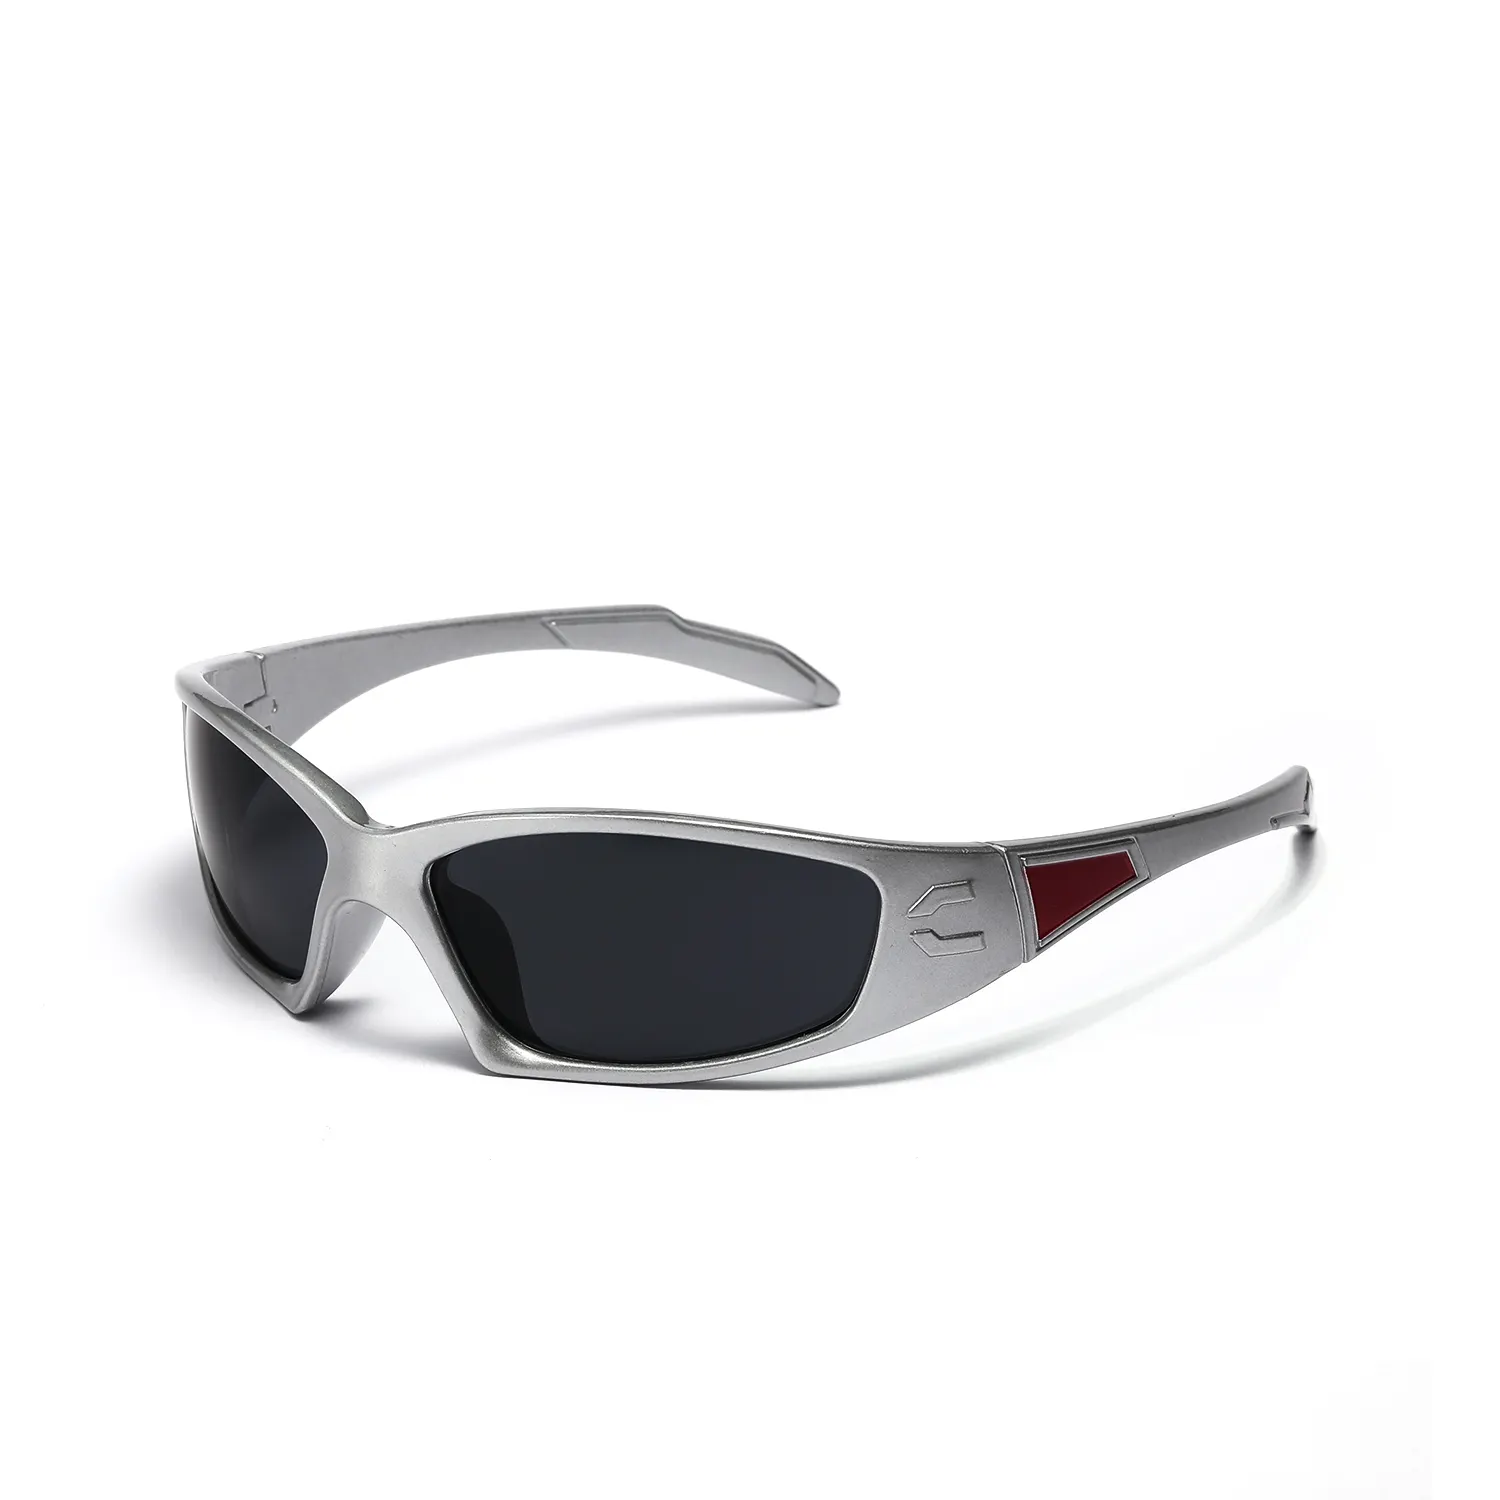 Óculos esportivos Fullframe anti-riscos elegantes com moldura de nylon flexível